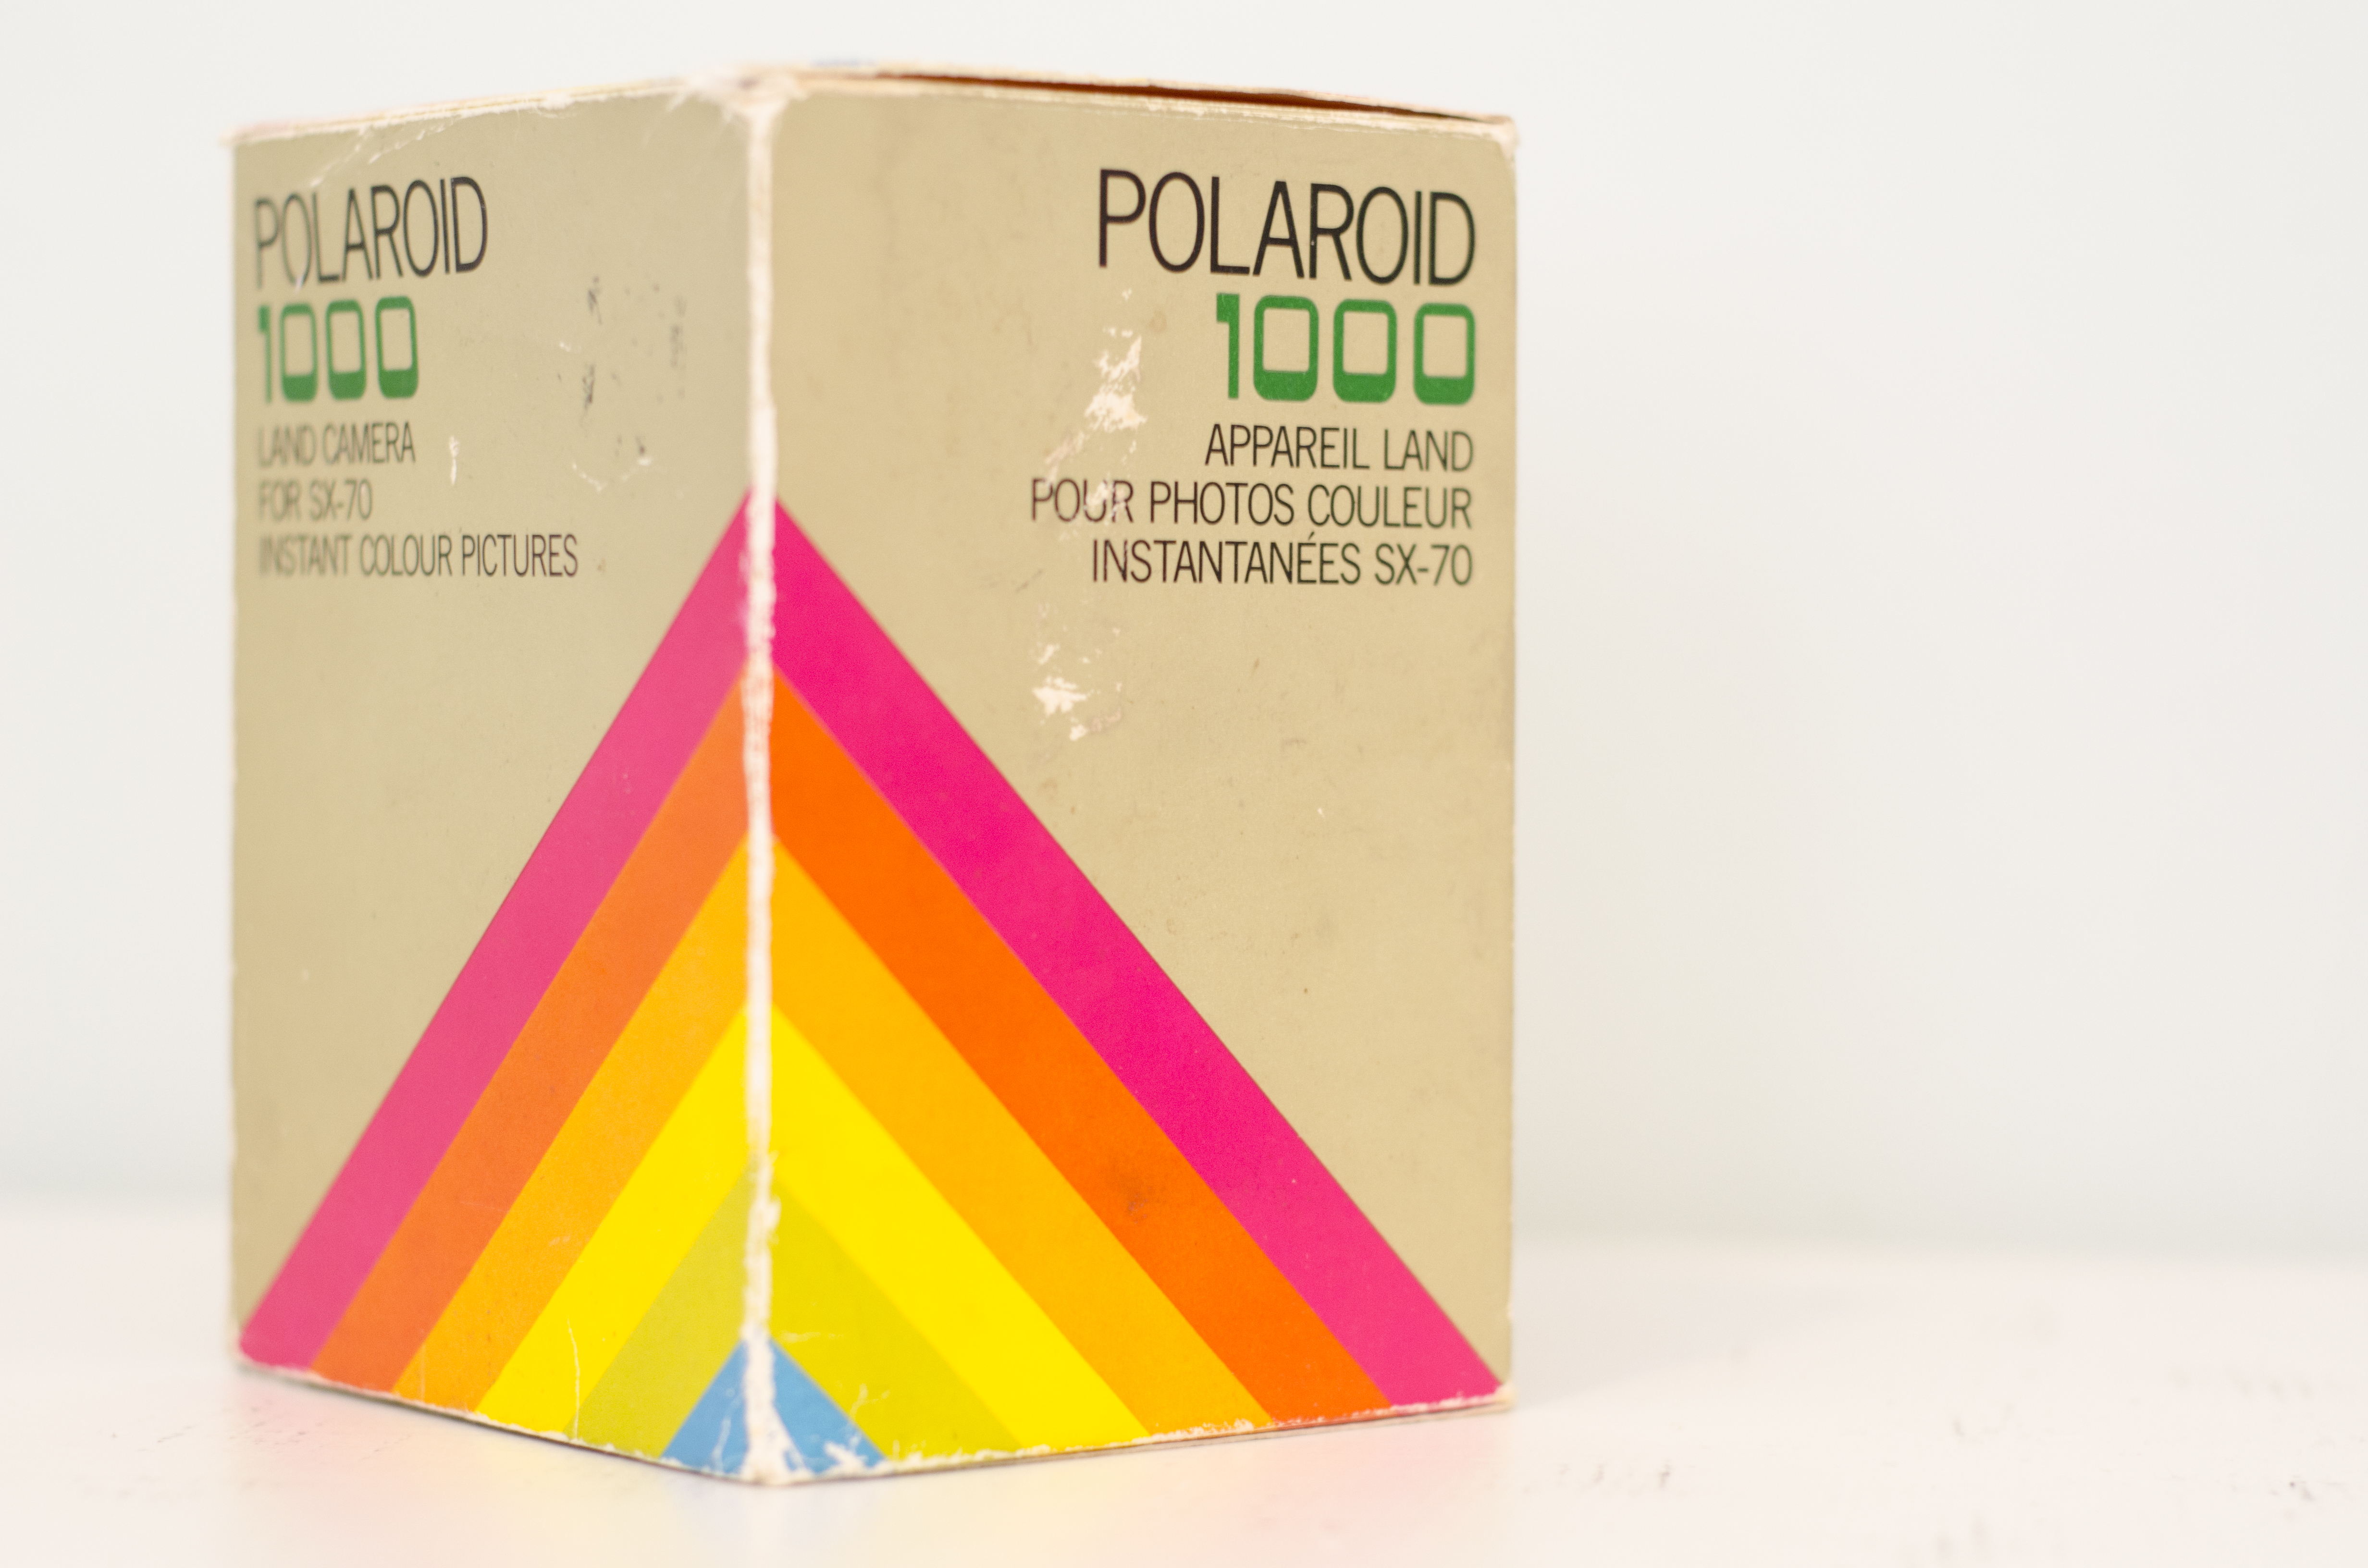 Box for Polaroid 1000